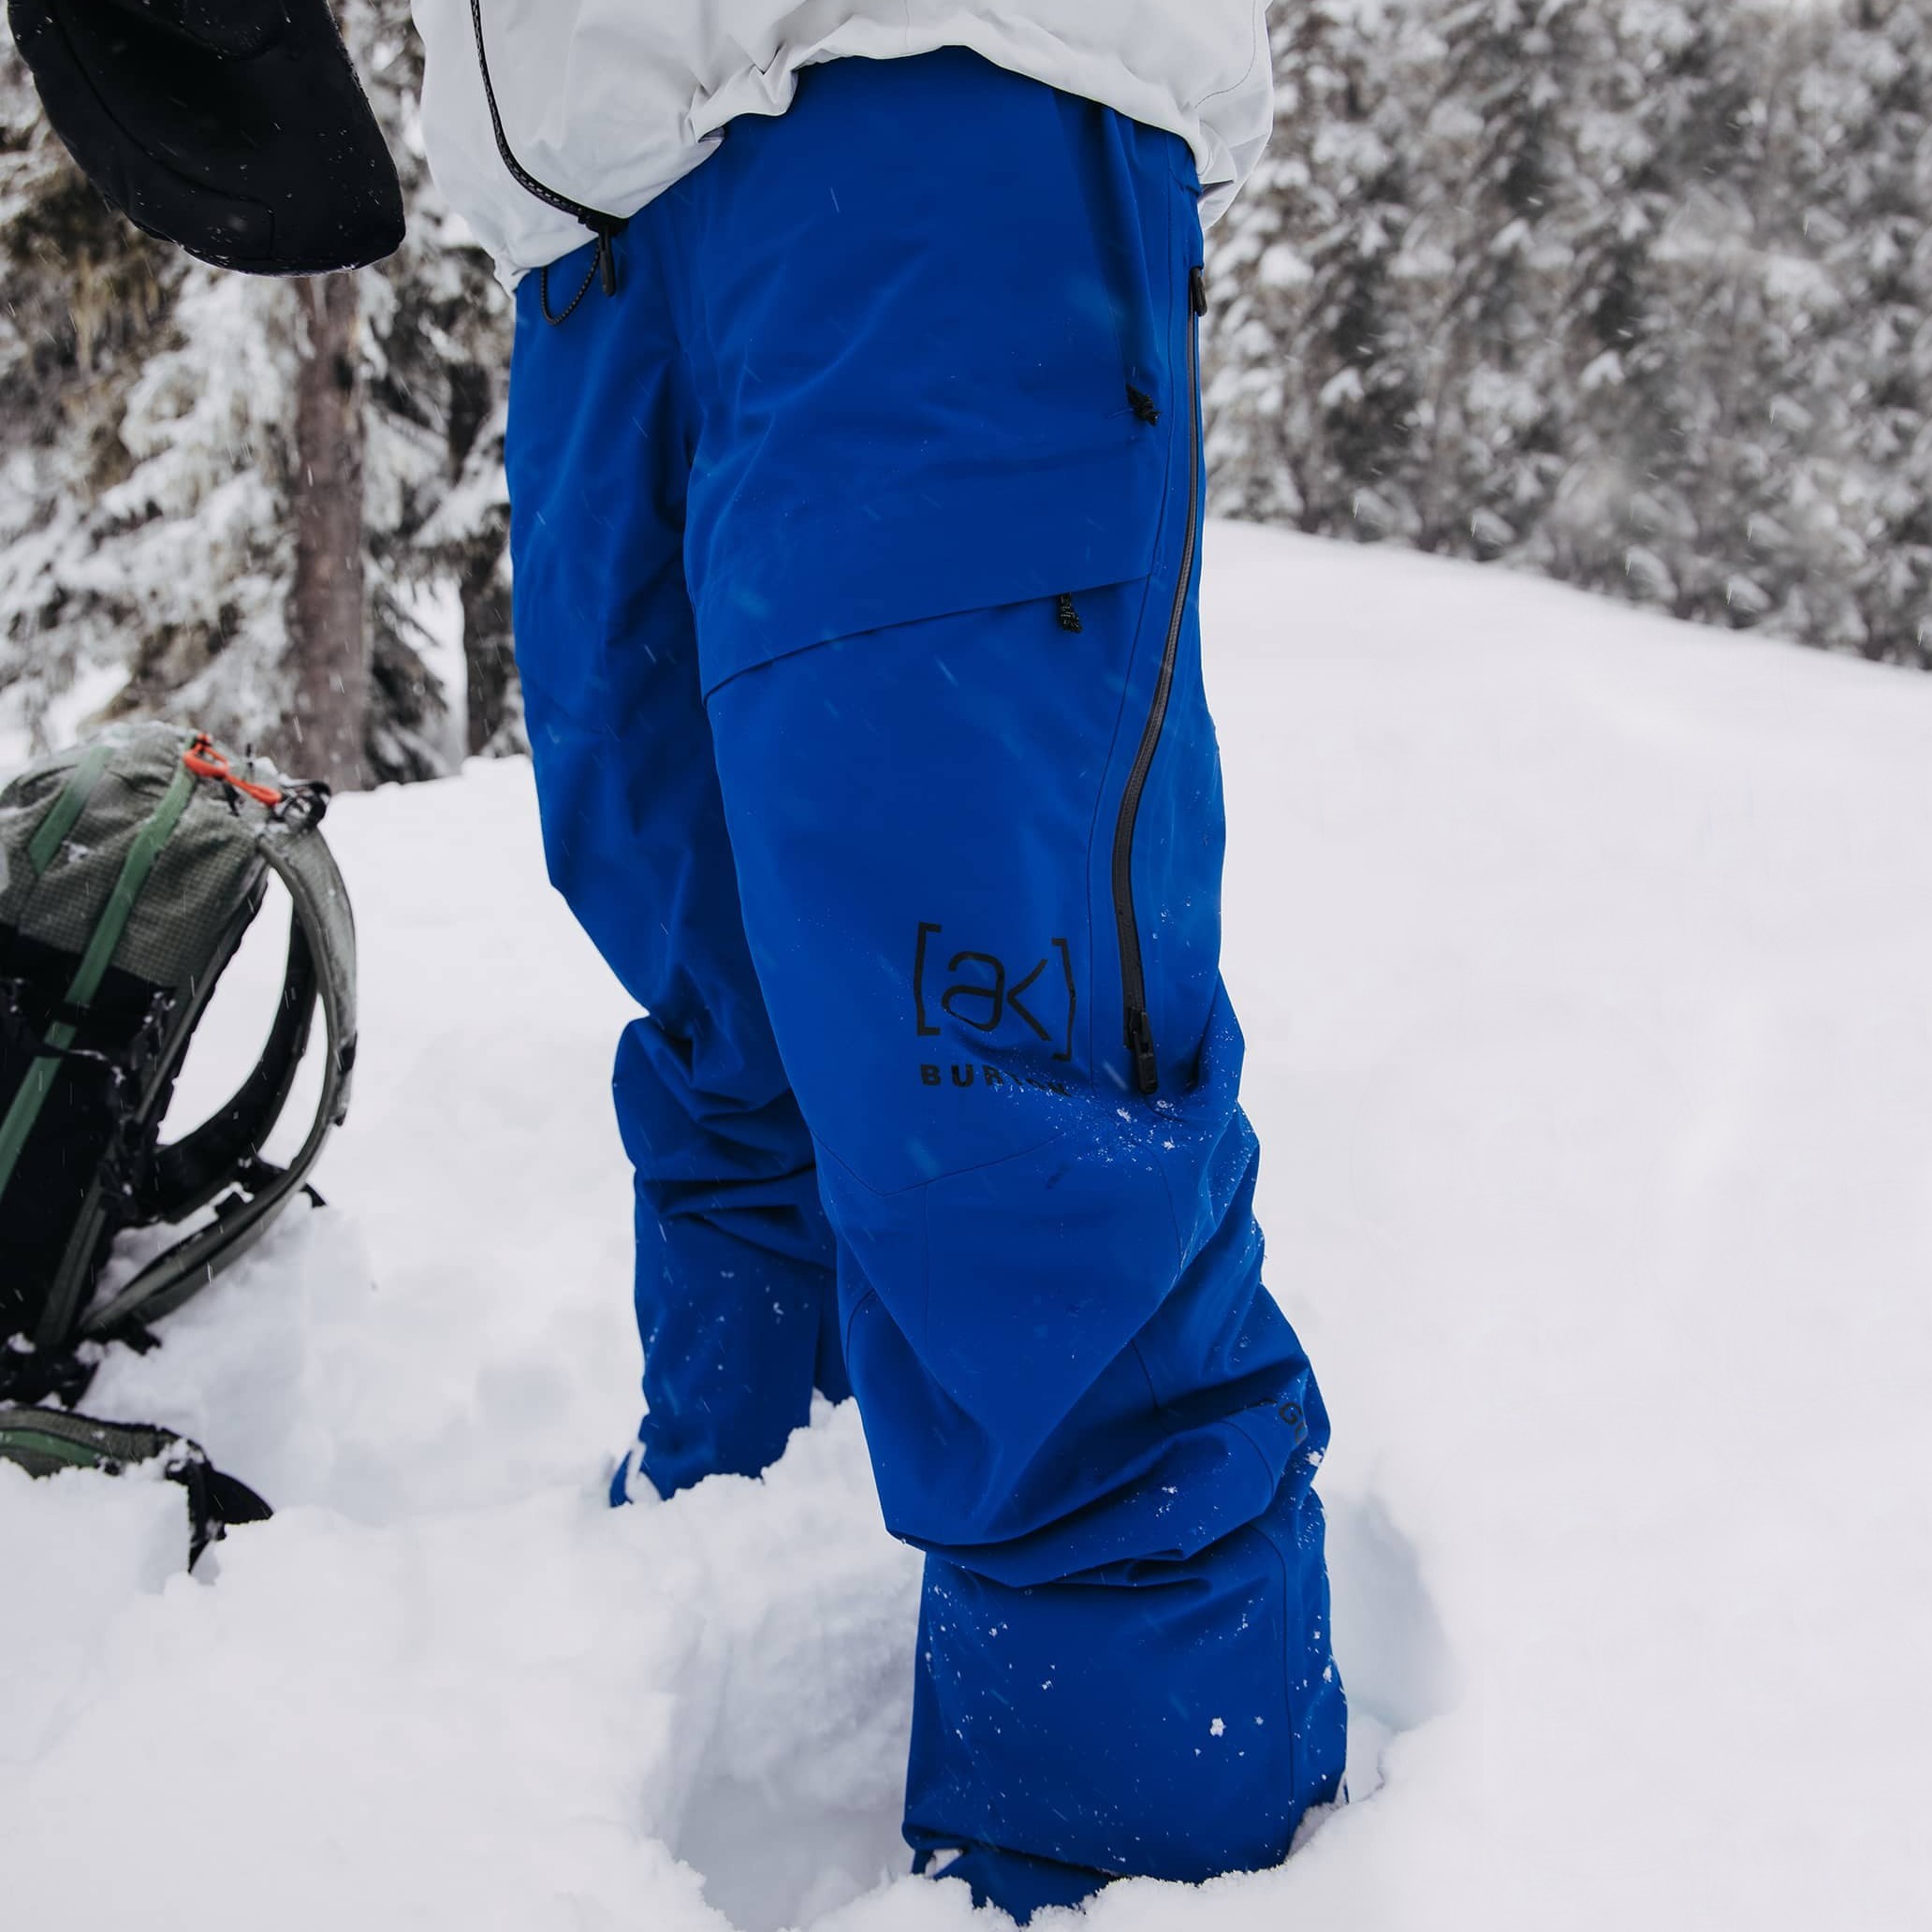 Burton [ak] 2L Swash Gore-Tex Ski/Snowboard Pants